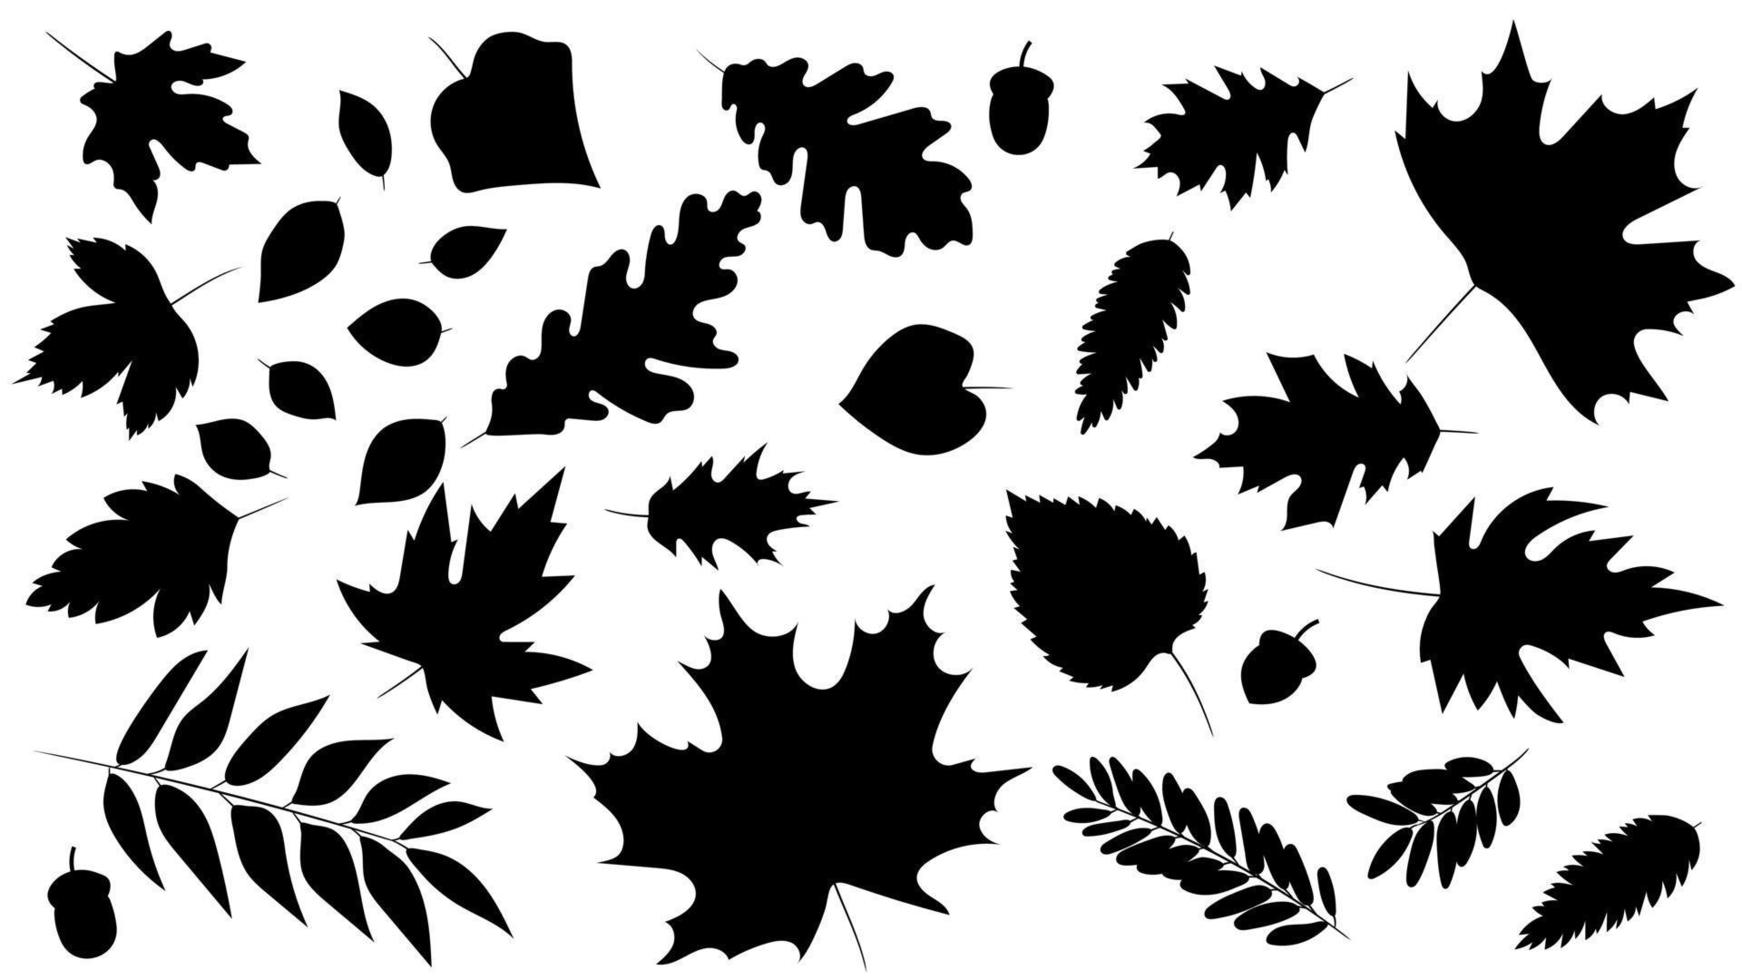 stor uppsättning löv från olika sorters träd isolerade. uppsättning av svarta höstlöv ek, lönn, rönn och ekollon. realistisk siluett stil. vektor illustration. uppsättning lövverk.